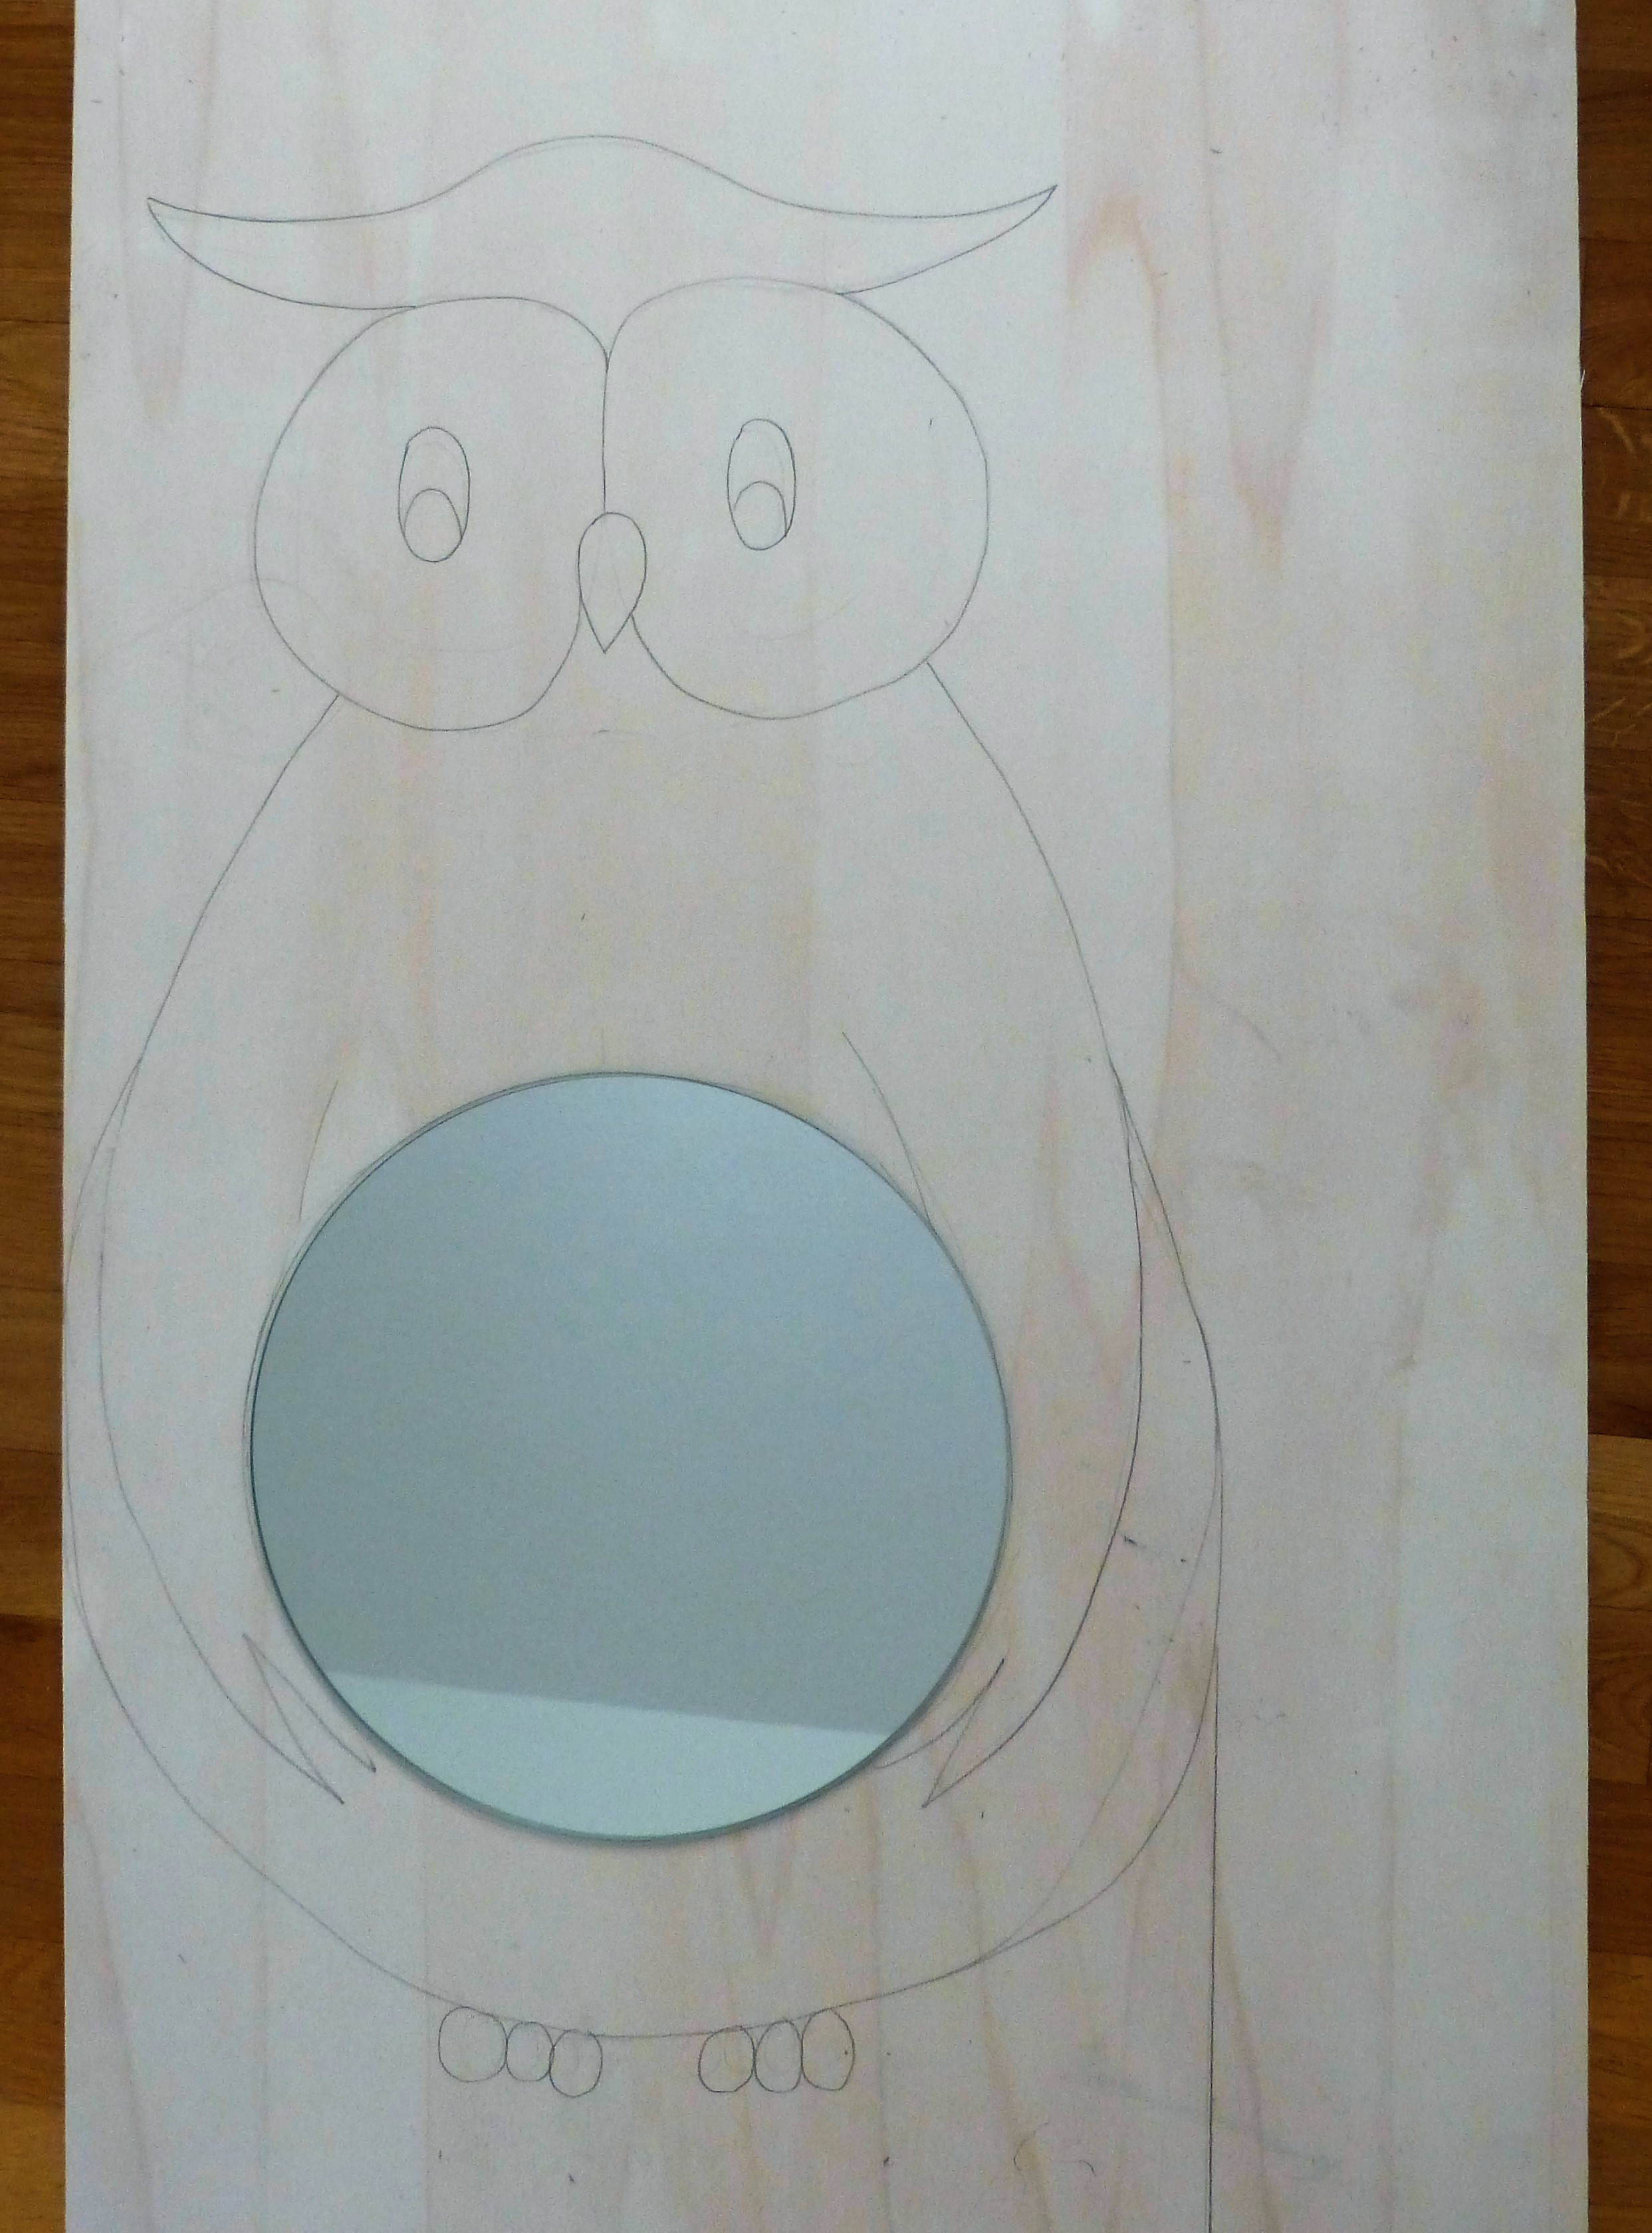 DIY-Kinderspiegel: Sperrholzplatte zu einer Eule ausschneiden, bemalen und Spiegel draufkleben.